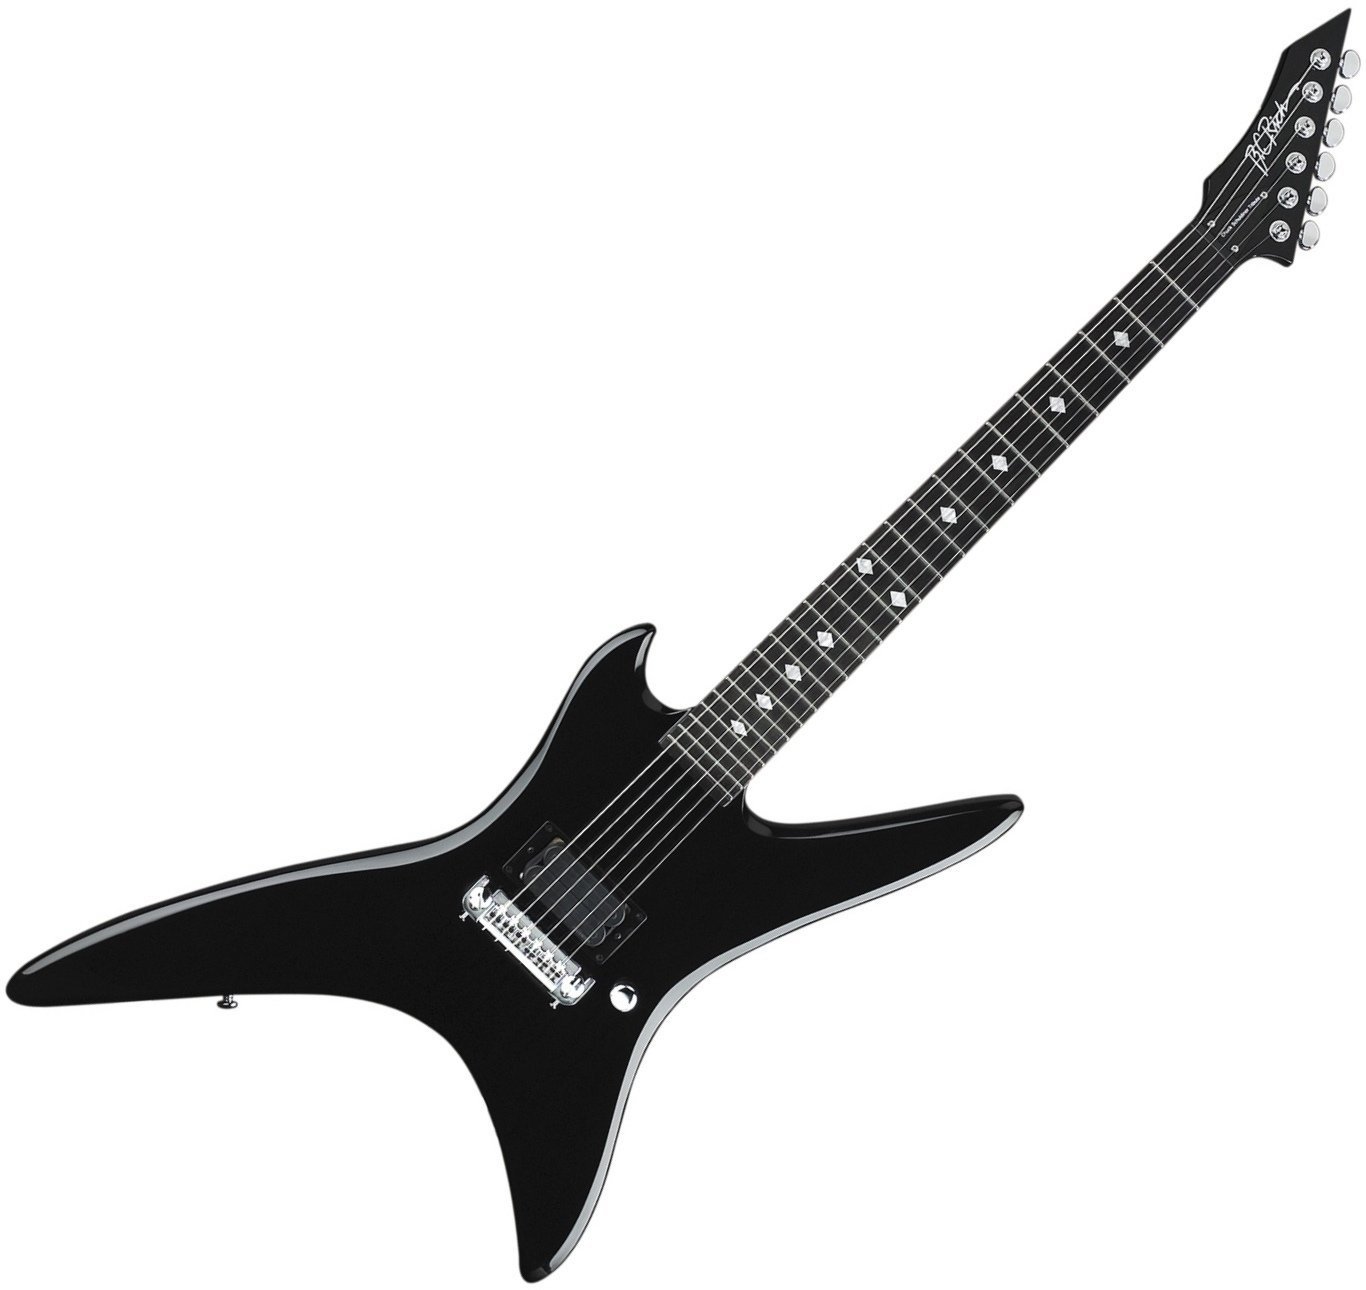 Elektrische gitaar BC RICH CSTSO Stealth Chuck Schuldiner Tribute